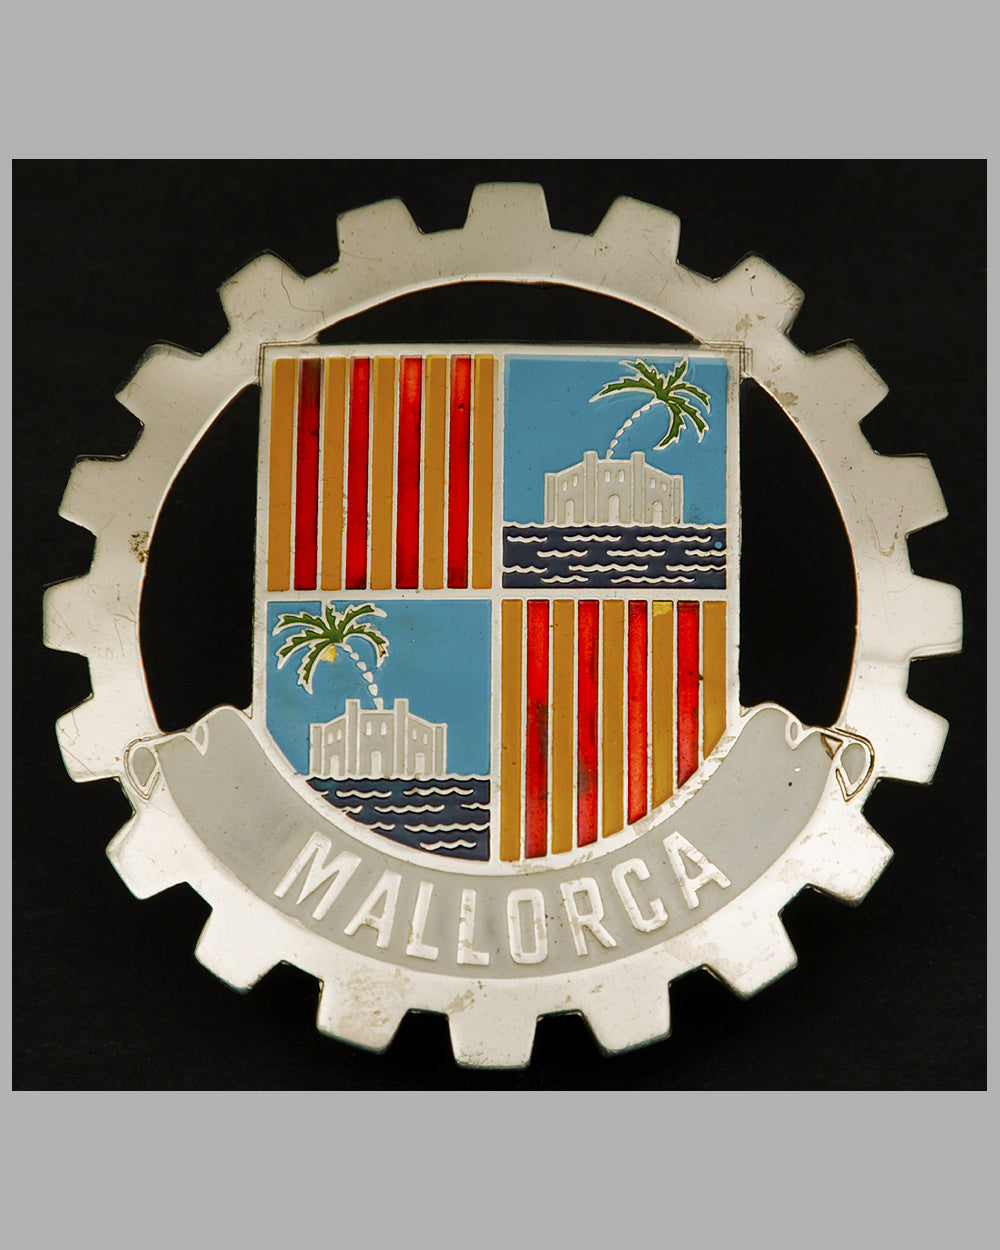 Mallorca souvenir badge